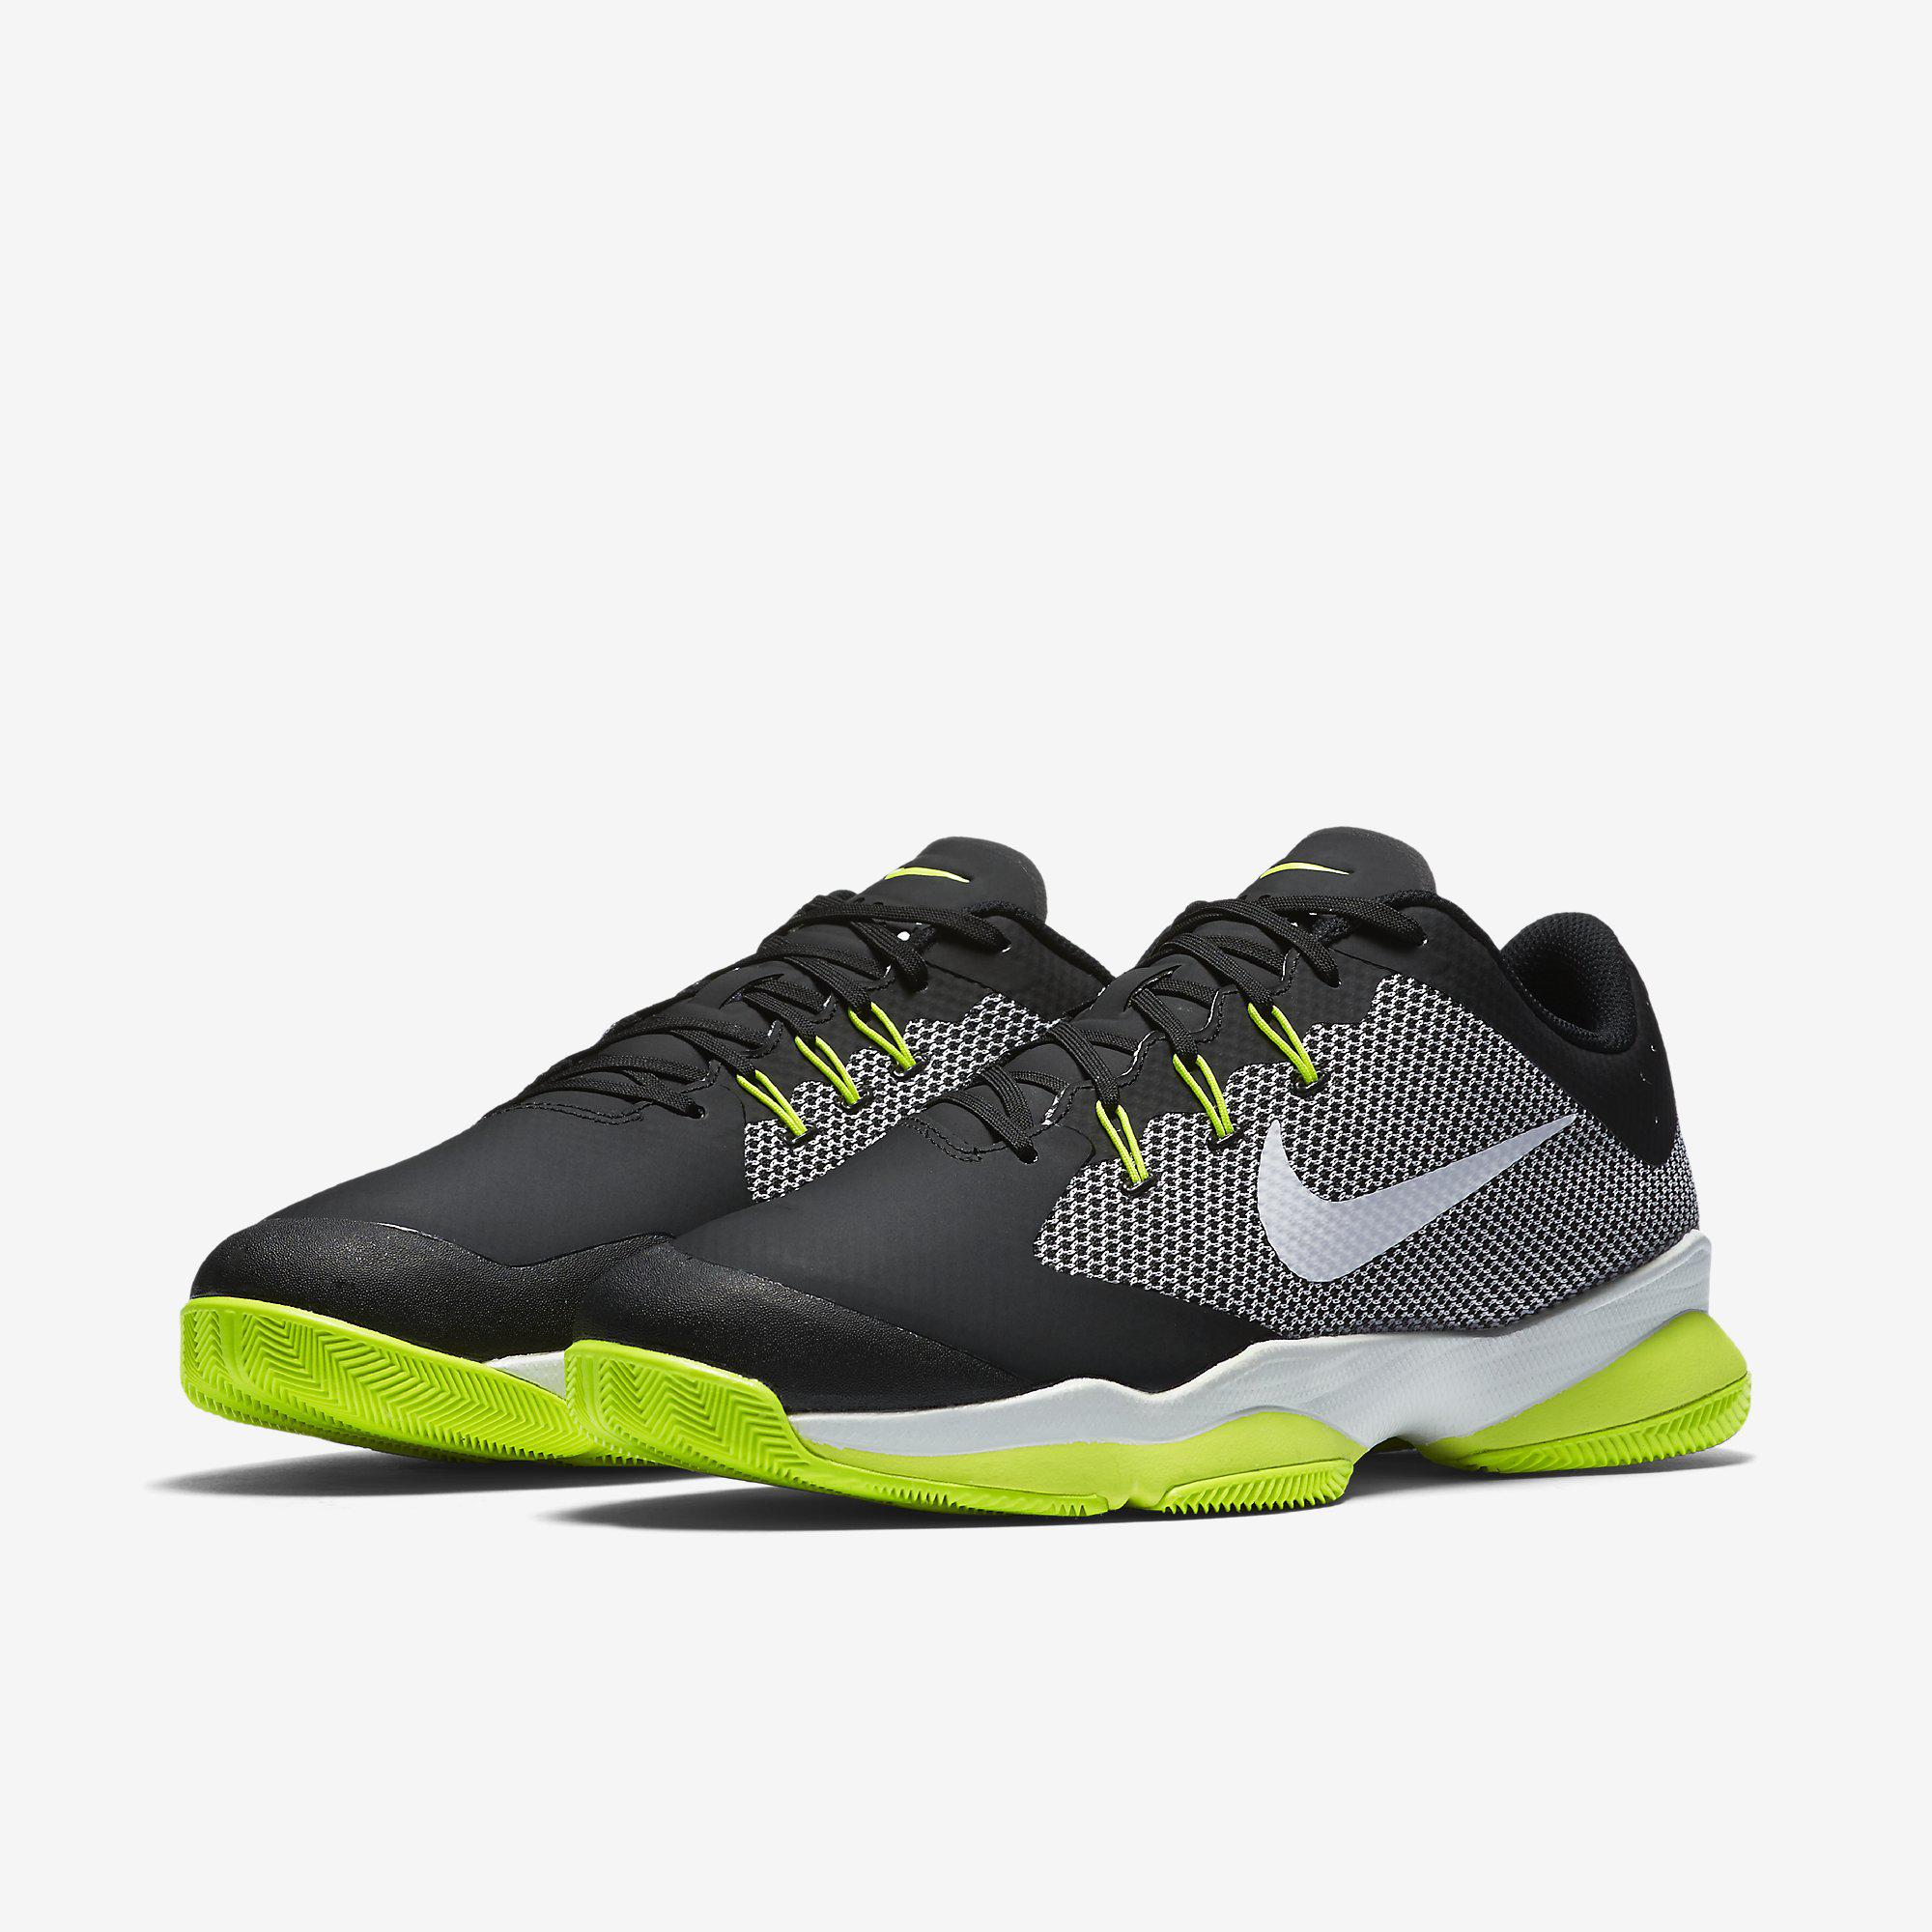 Nike Mens Air Zoom Ultra Tennis Shoes - Black/Volt - Tennisnuts.com